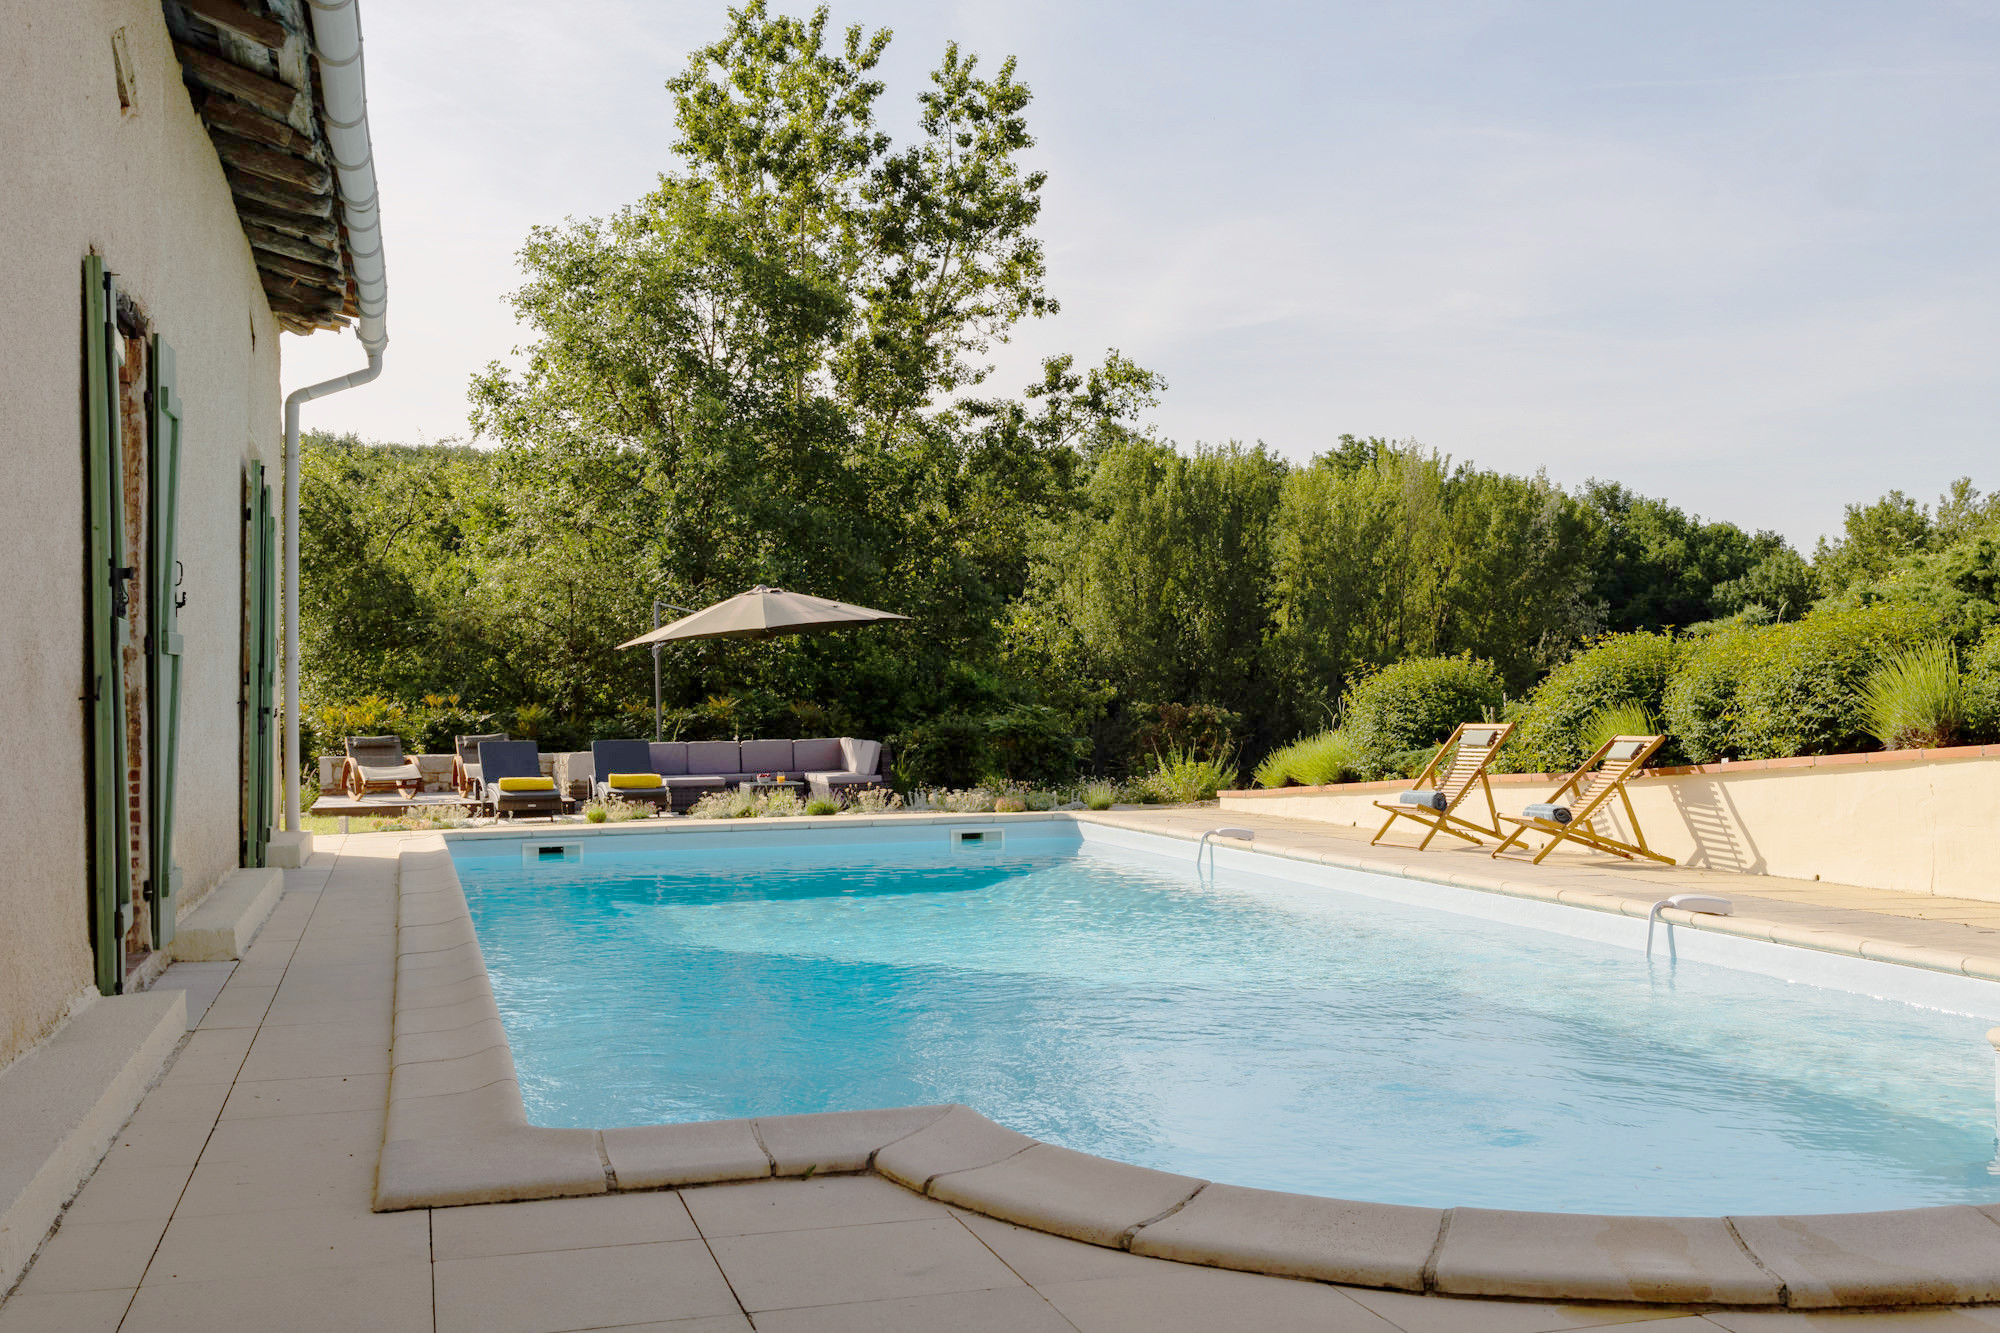 maison Kalia- gites vacances 4 étoiles piscine gers lomagne ©GascogneCollection